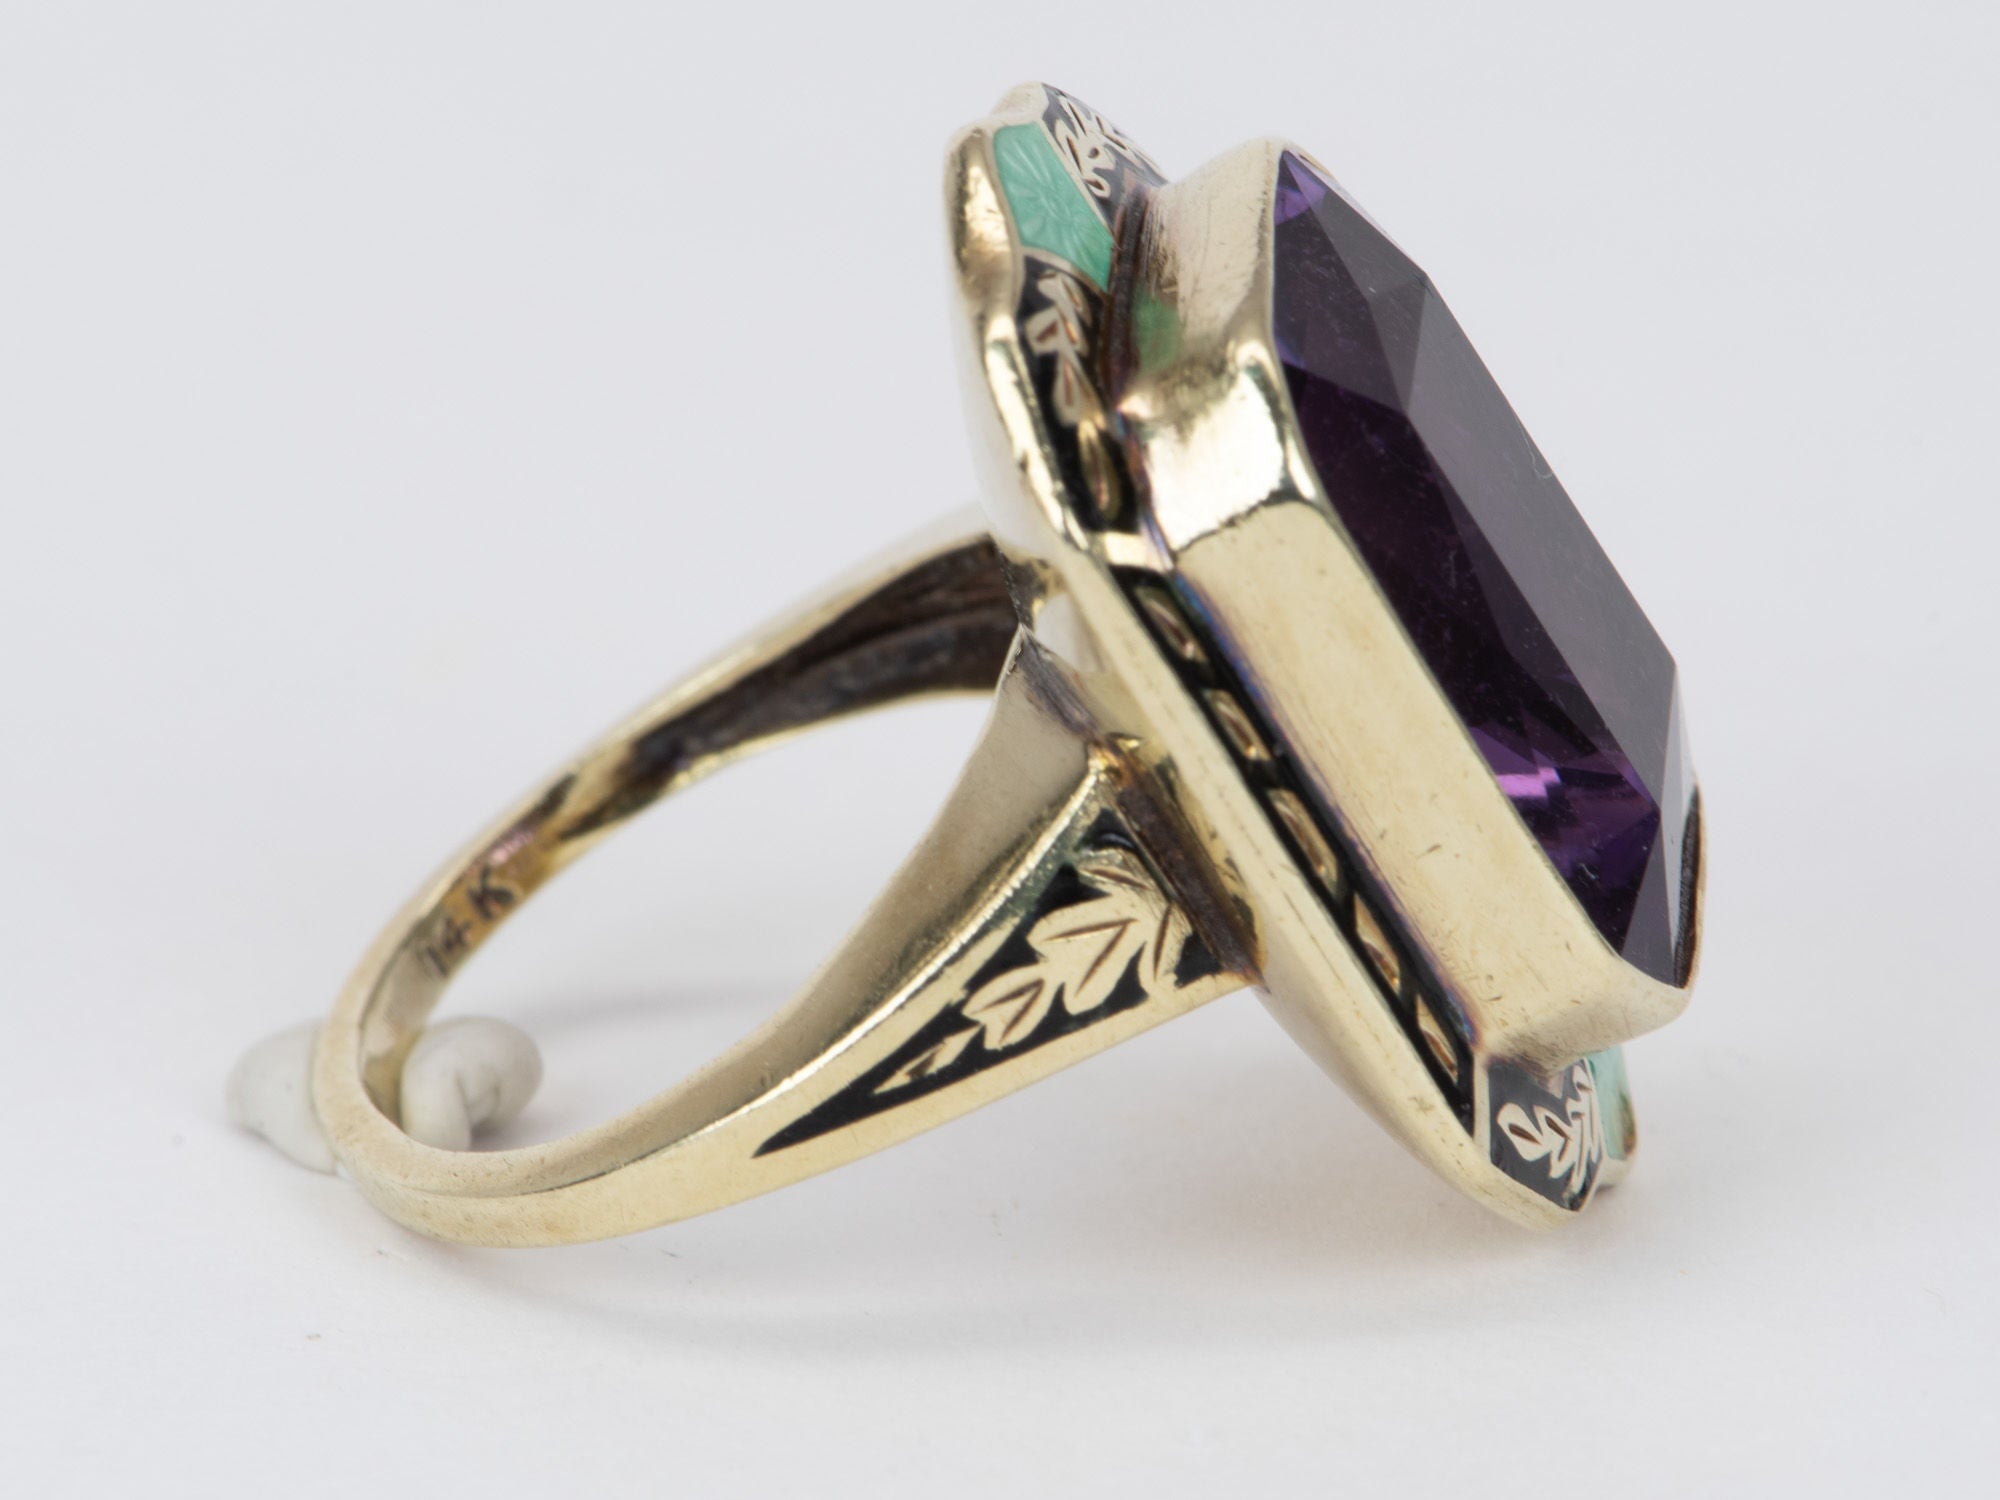 Vintage Statement Amethyst Ring with 14K Details Designer V10 Aurora - Enamel 8.93g Gold